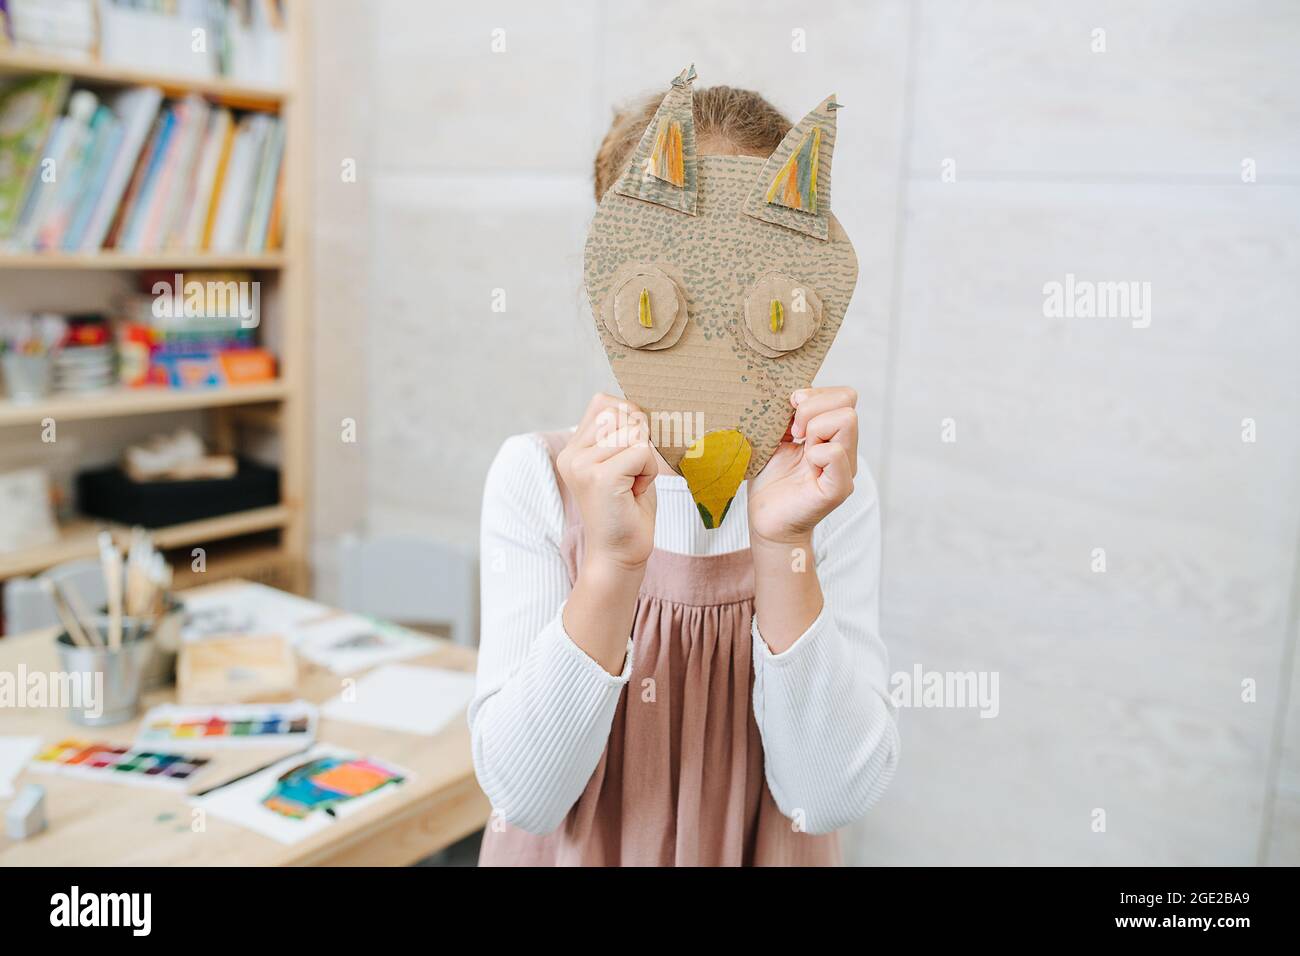 Petite fille holng carton fait main renard masque sur son visage Banque D'Images